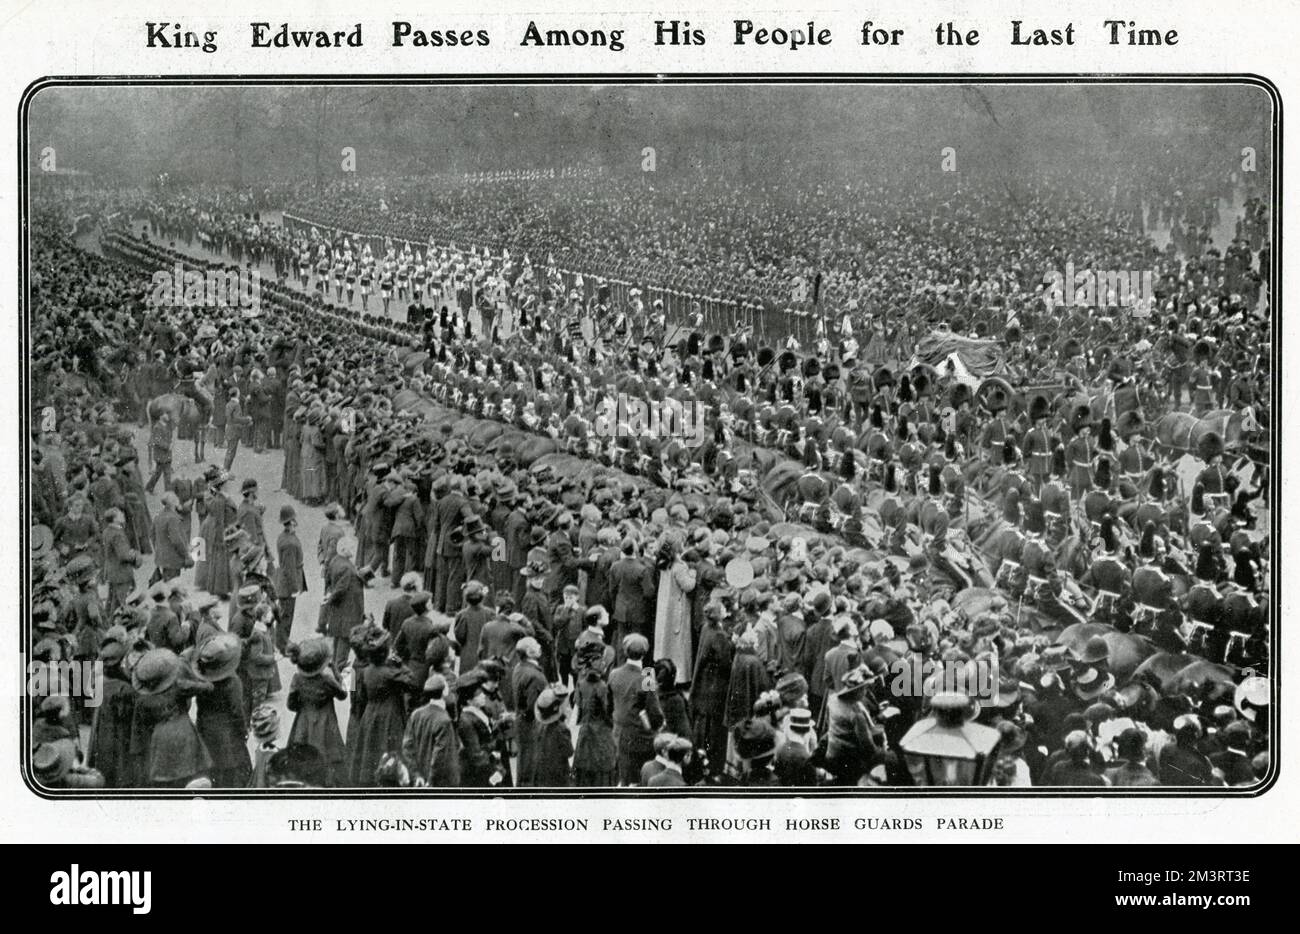 König Edward kommt zum letzten Mal unter seinem Volk vorbei, der Waffenwagen, der durch die Horse Guard Parade fährt. Datum: 20. Mai 1910 Stockfoto